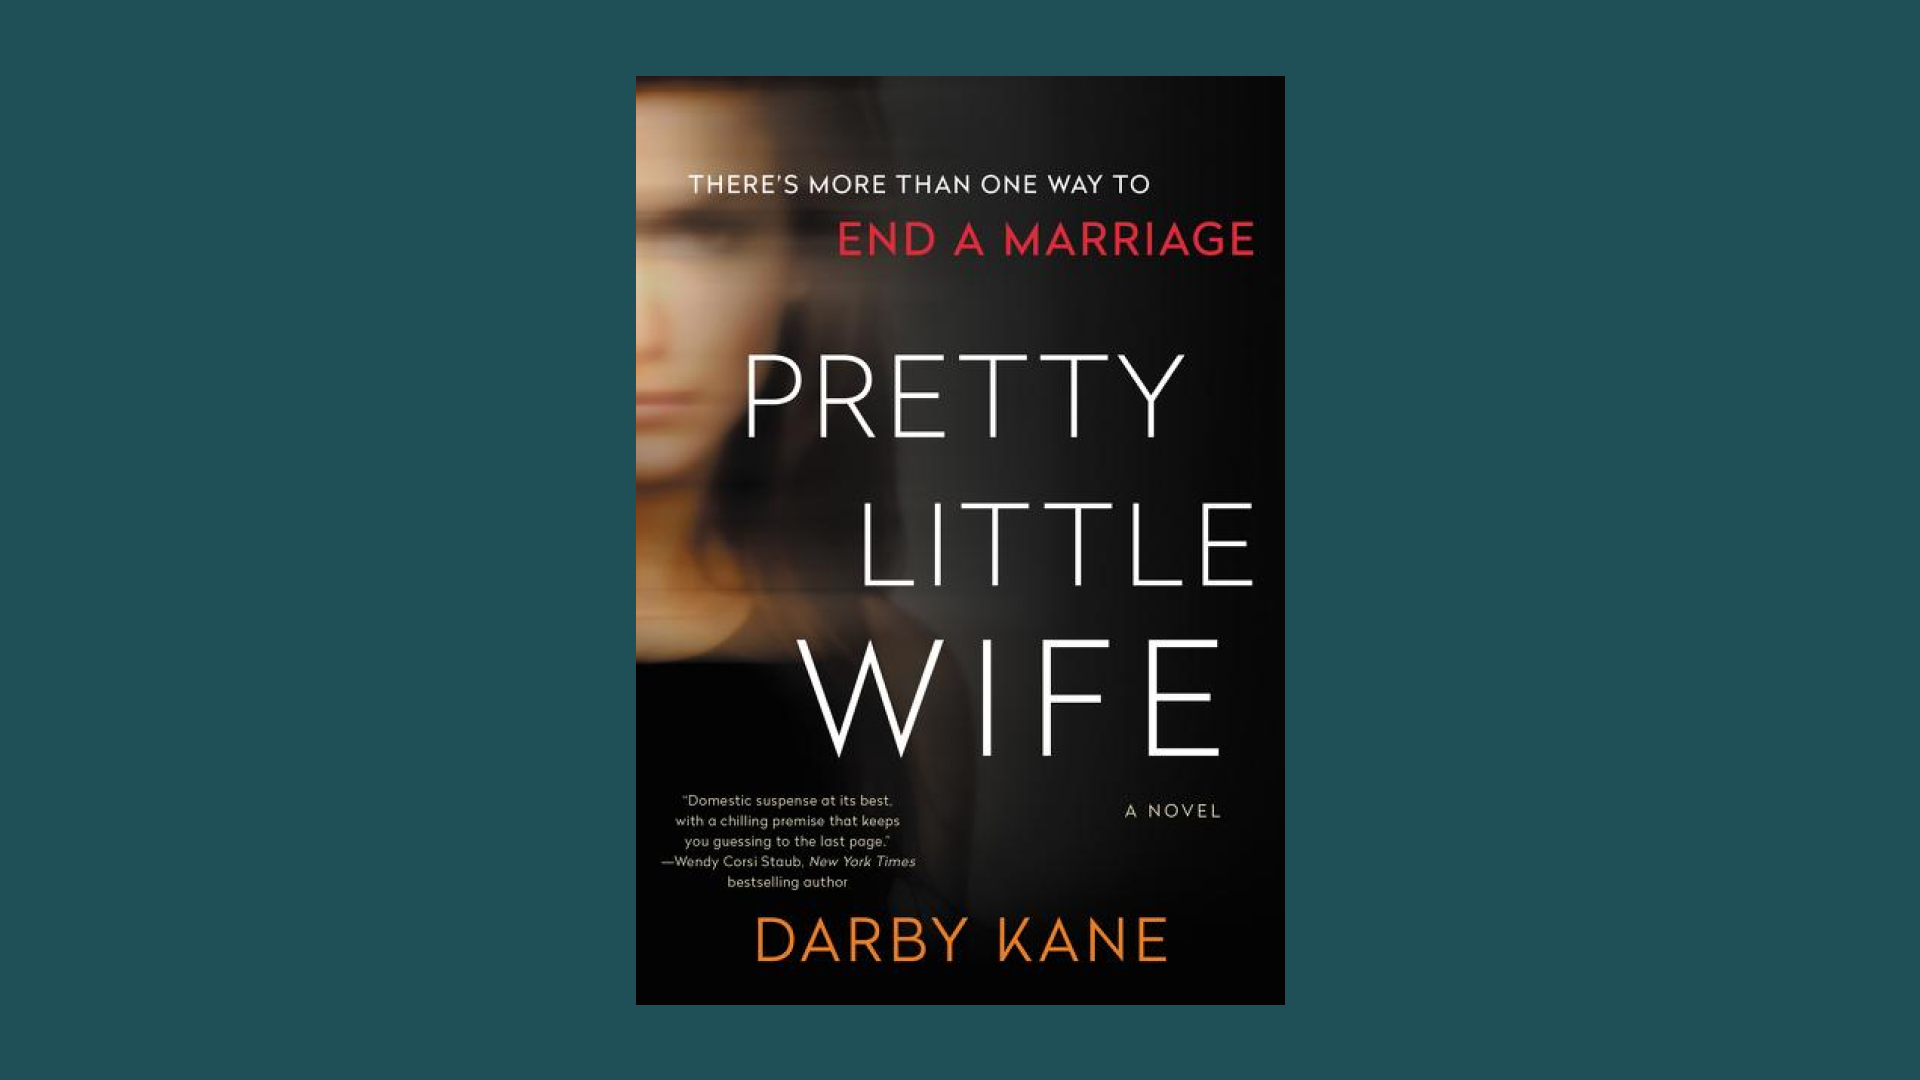 “Pretty Little Wife” by Darby Kane